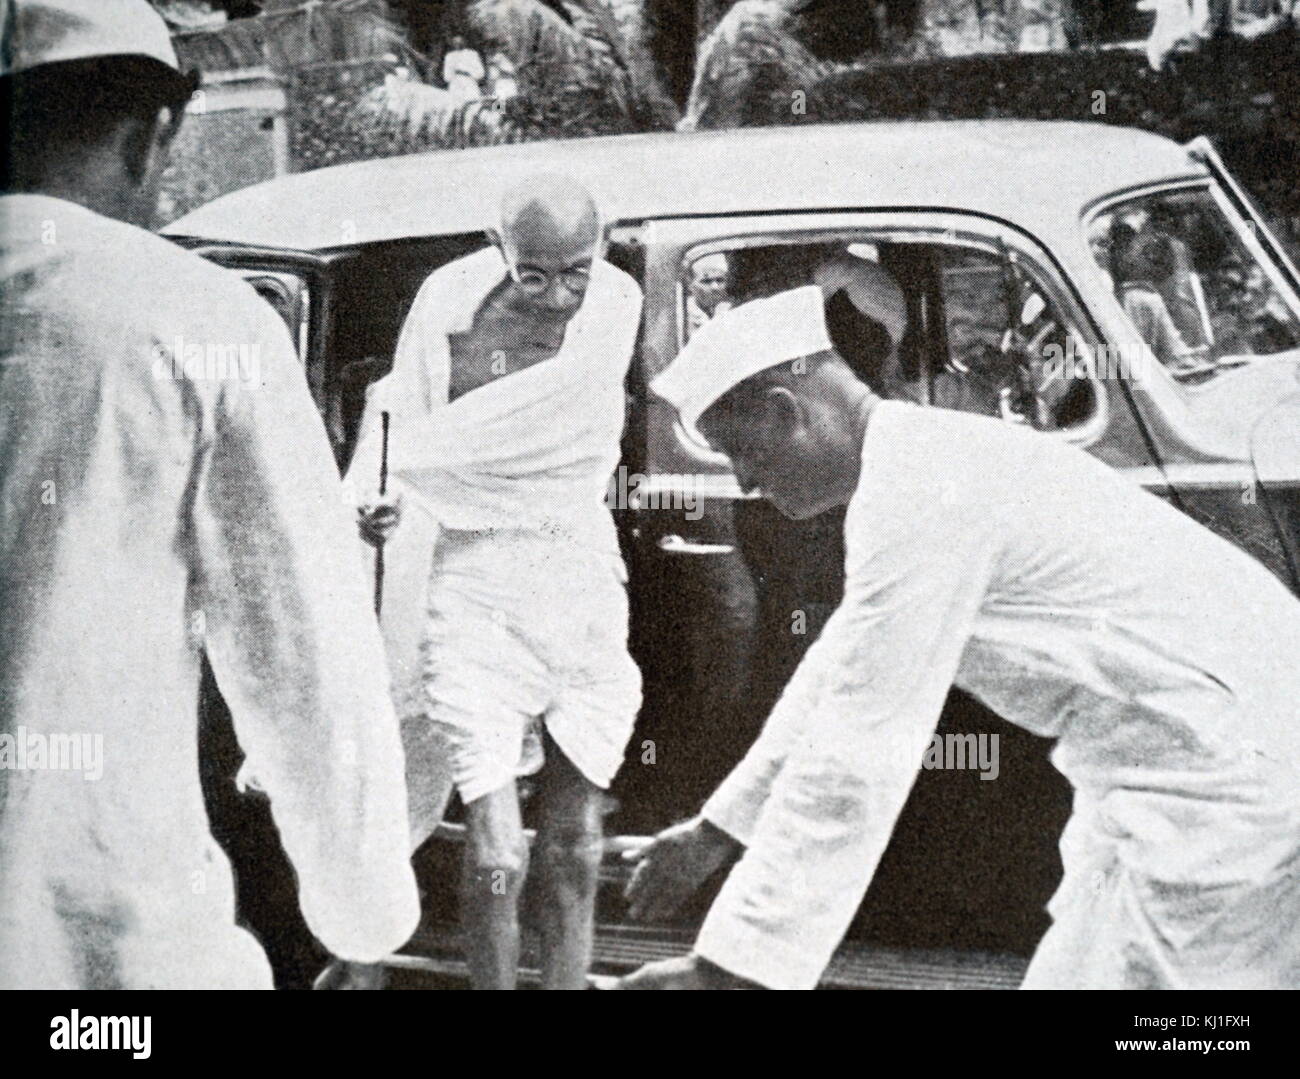 Mohandas Karamchand Gandhi (1869 - 1948) arrive en voiture pour une réunion en 1941. Gandhi a été le principal chef de l'indépendance de l'Inde en mouvement a décidé de l'Inde. Banque D'Images